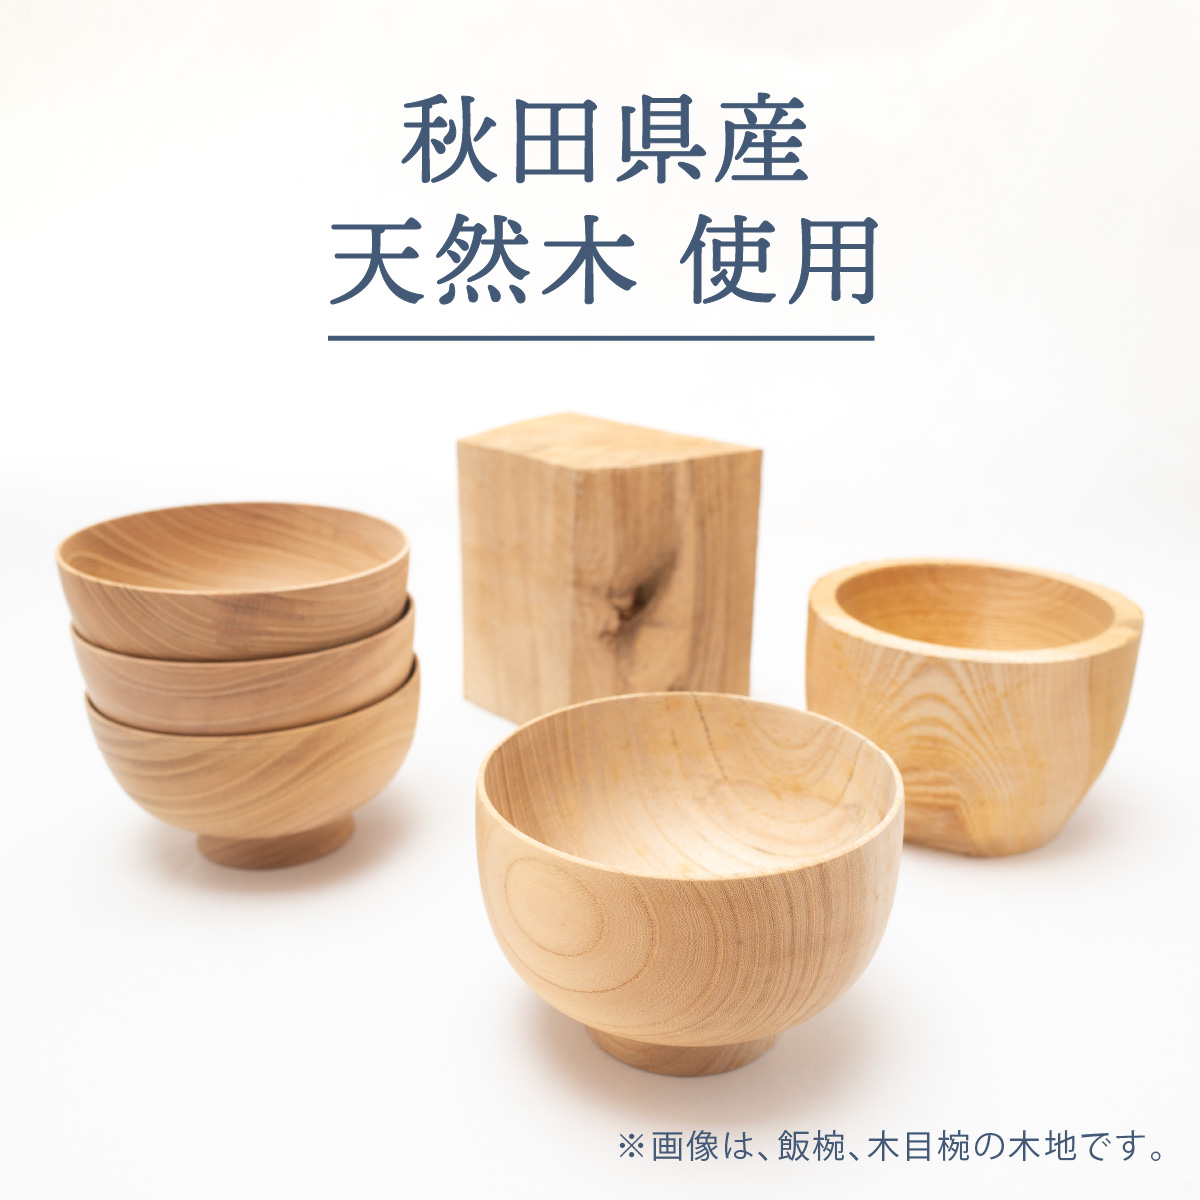 吸い物椀 吸物椀 蓋付き 吸物碗 木製 日本製 漆塗り 沈金 高級 お椀 